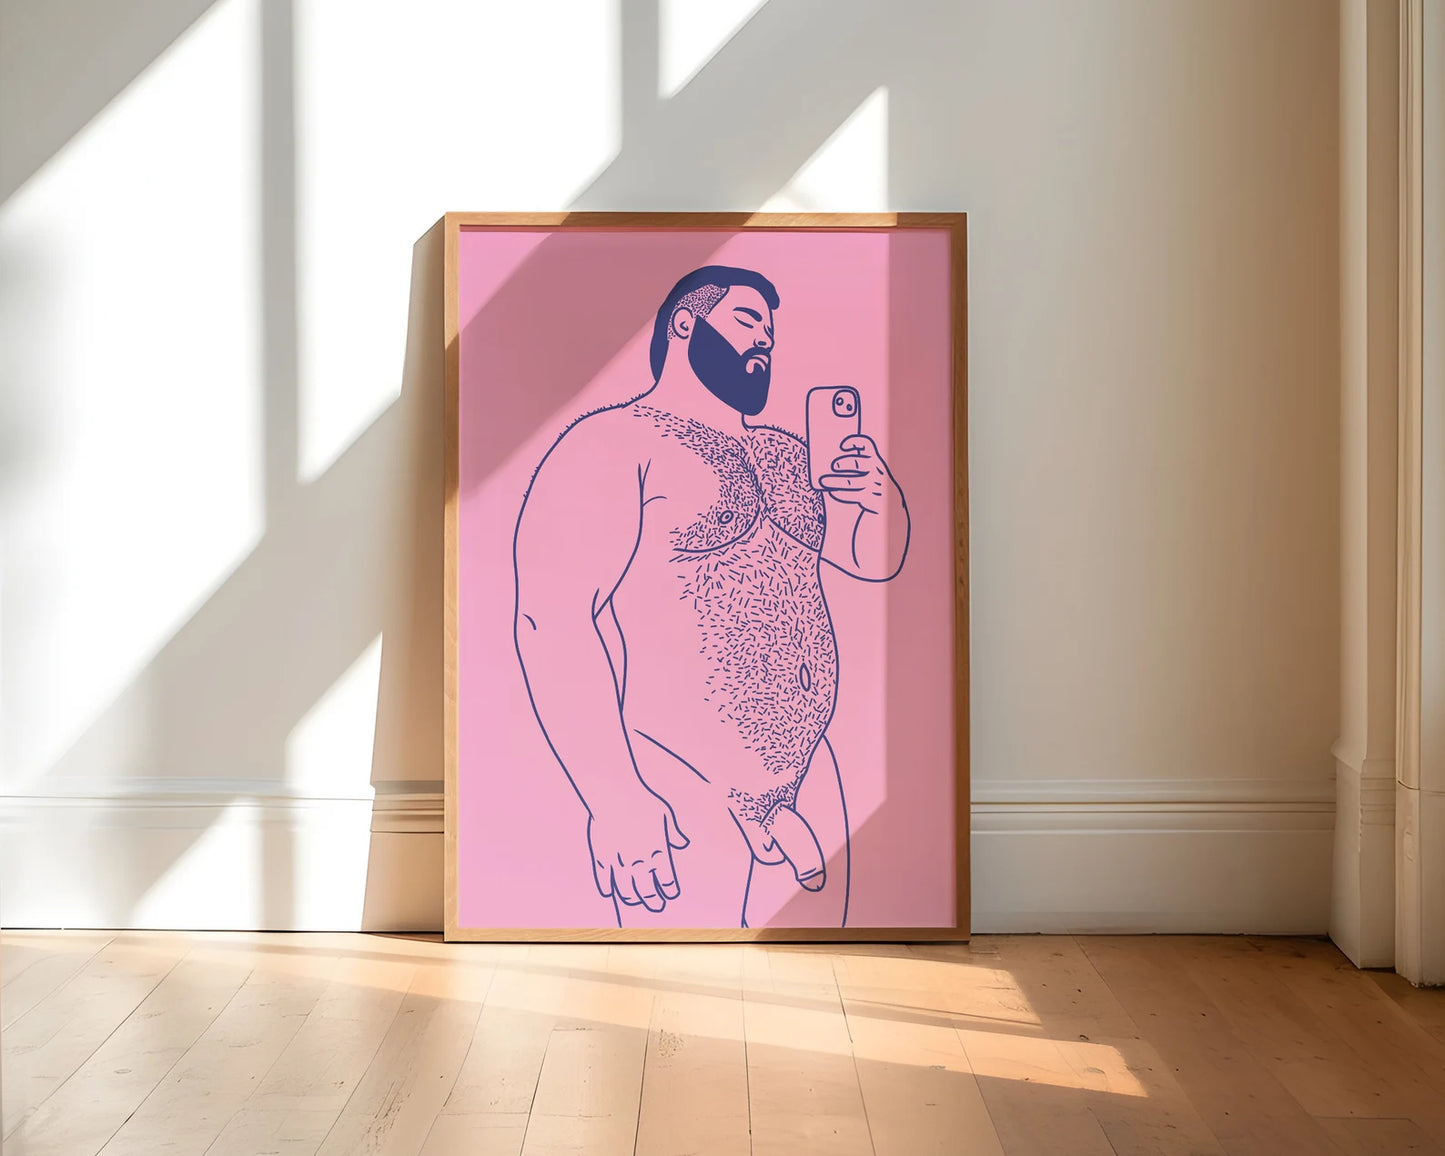 Bear Lover | Gay Art, Gay Couple, Gay Print Poster, Home Decor Wall Art, Gay Painting, Gay Gifts, LGBTQ+ Wall Poster